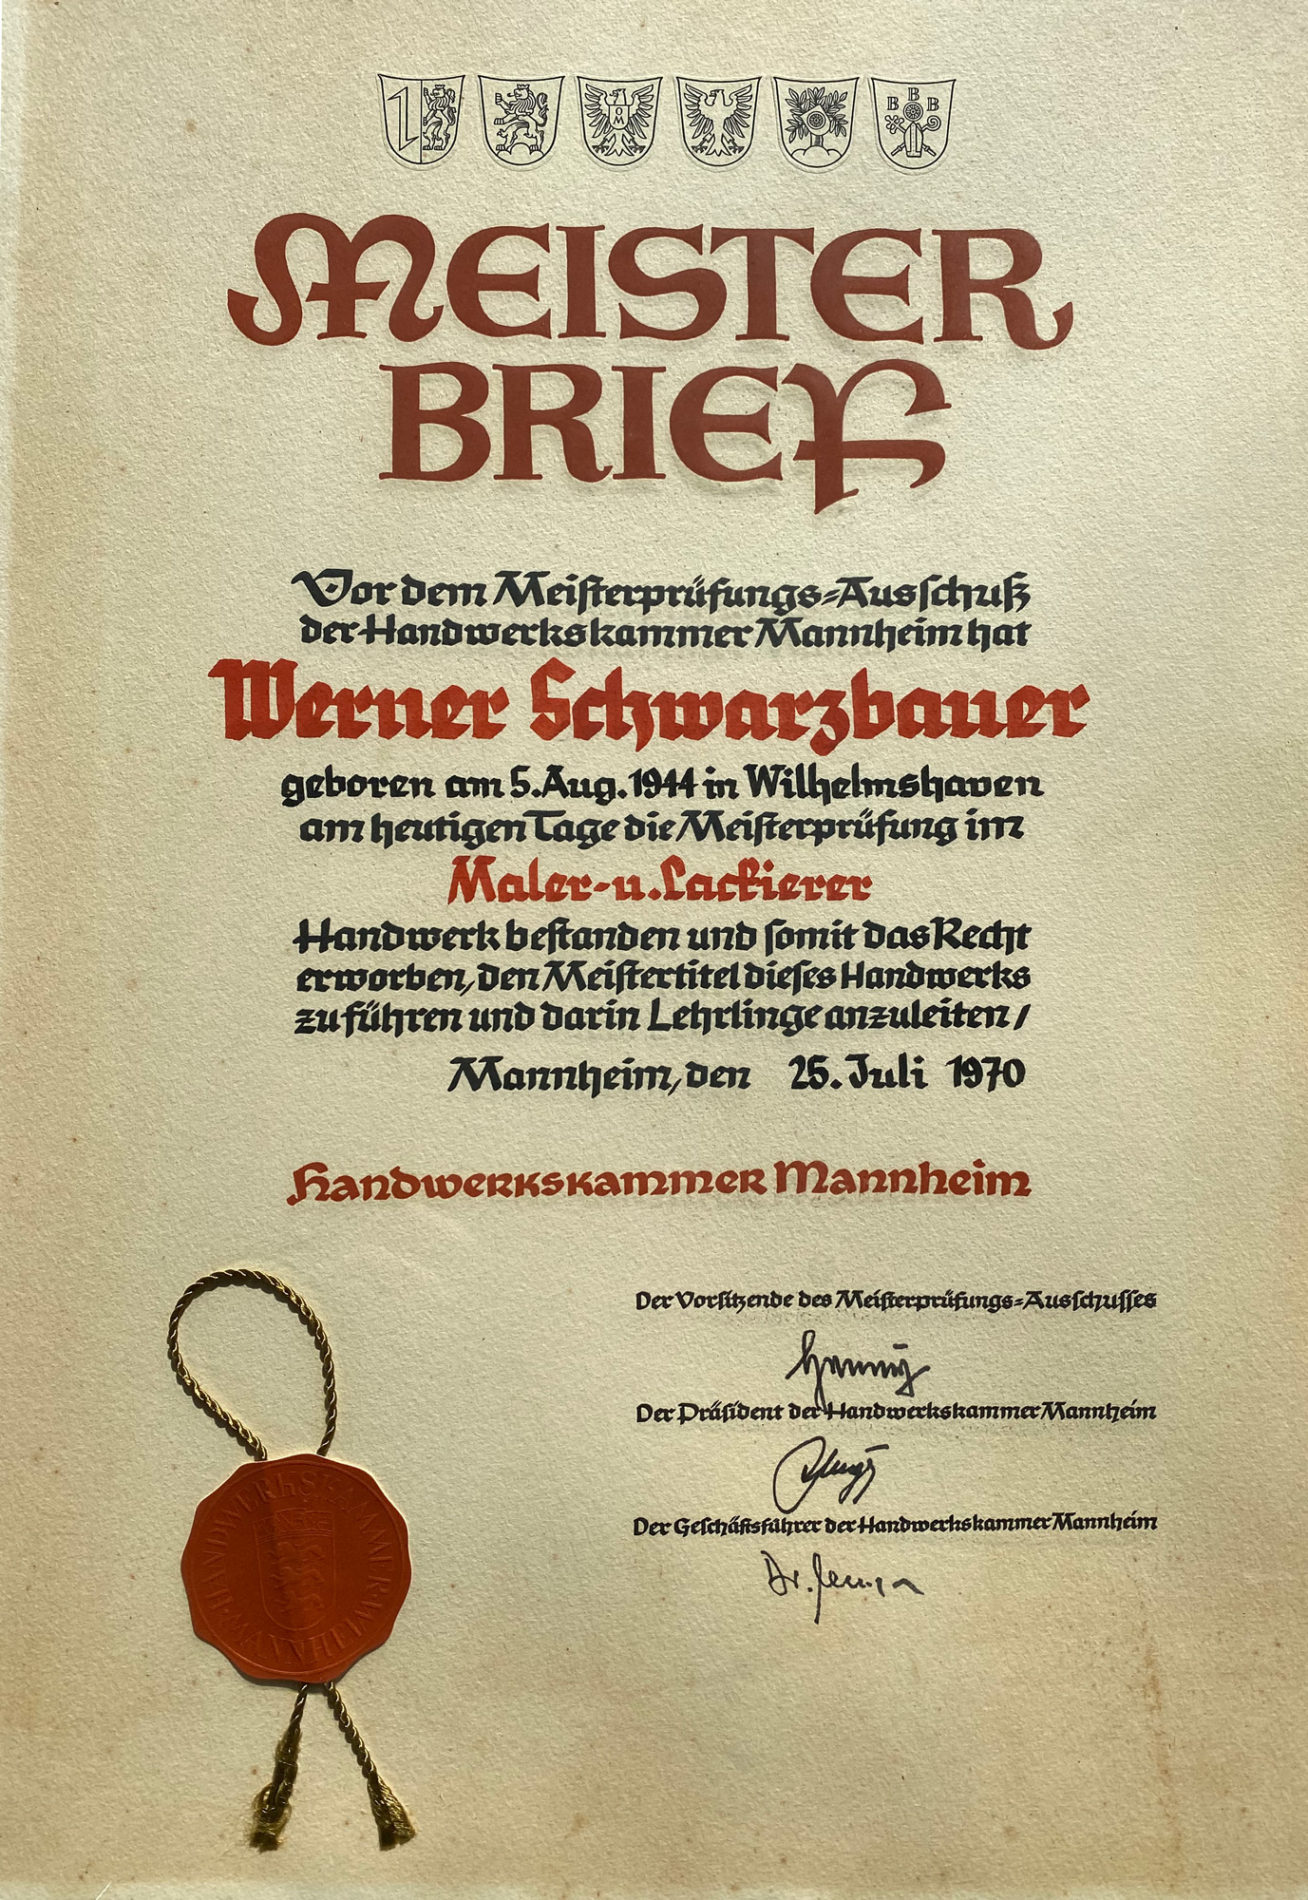 Meisterbrief Werner Schwarzbauer